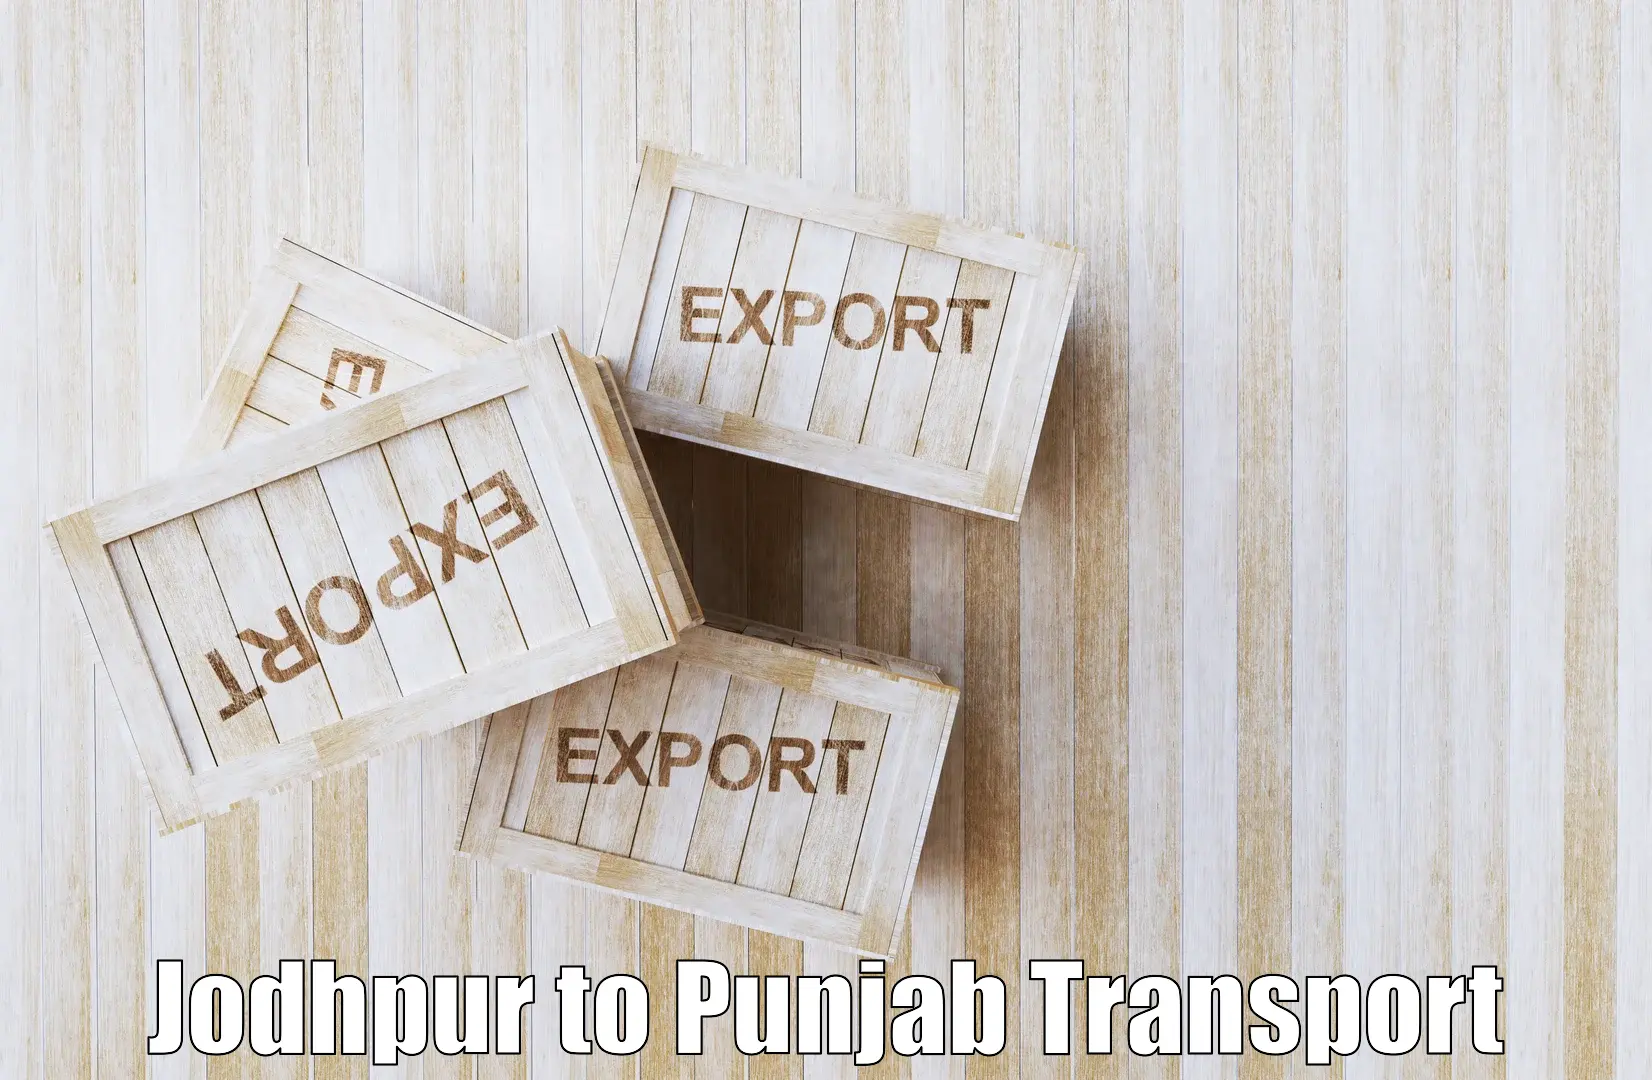 Land transport services in Jodhpur to Punjab